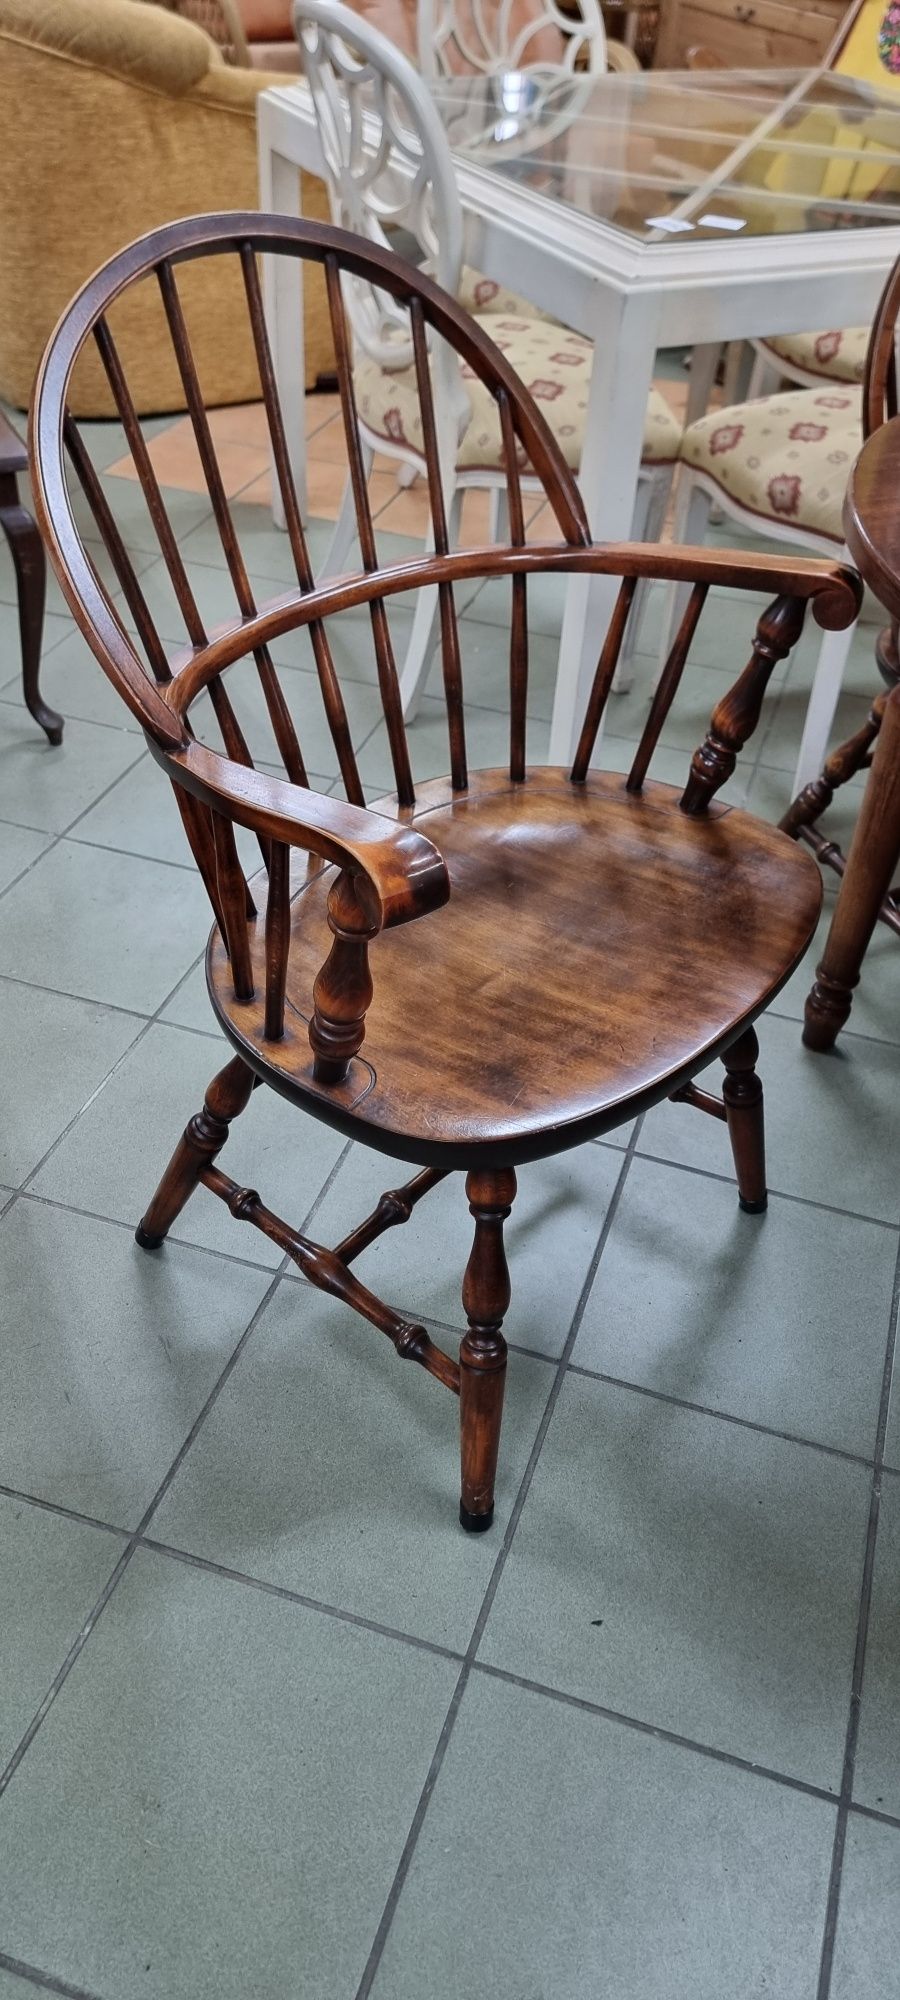 Stół z 6 krzesłami